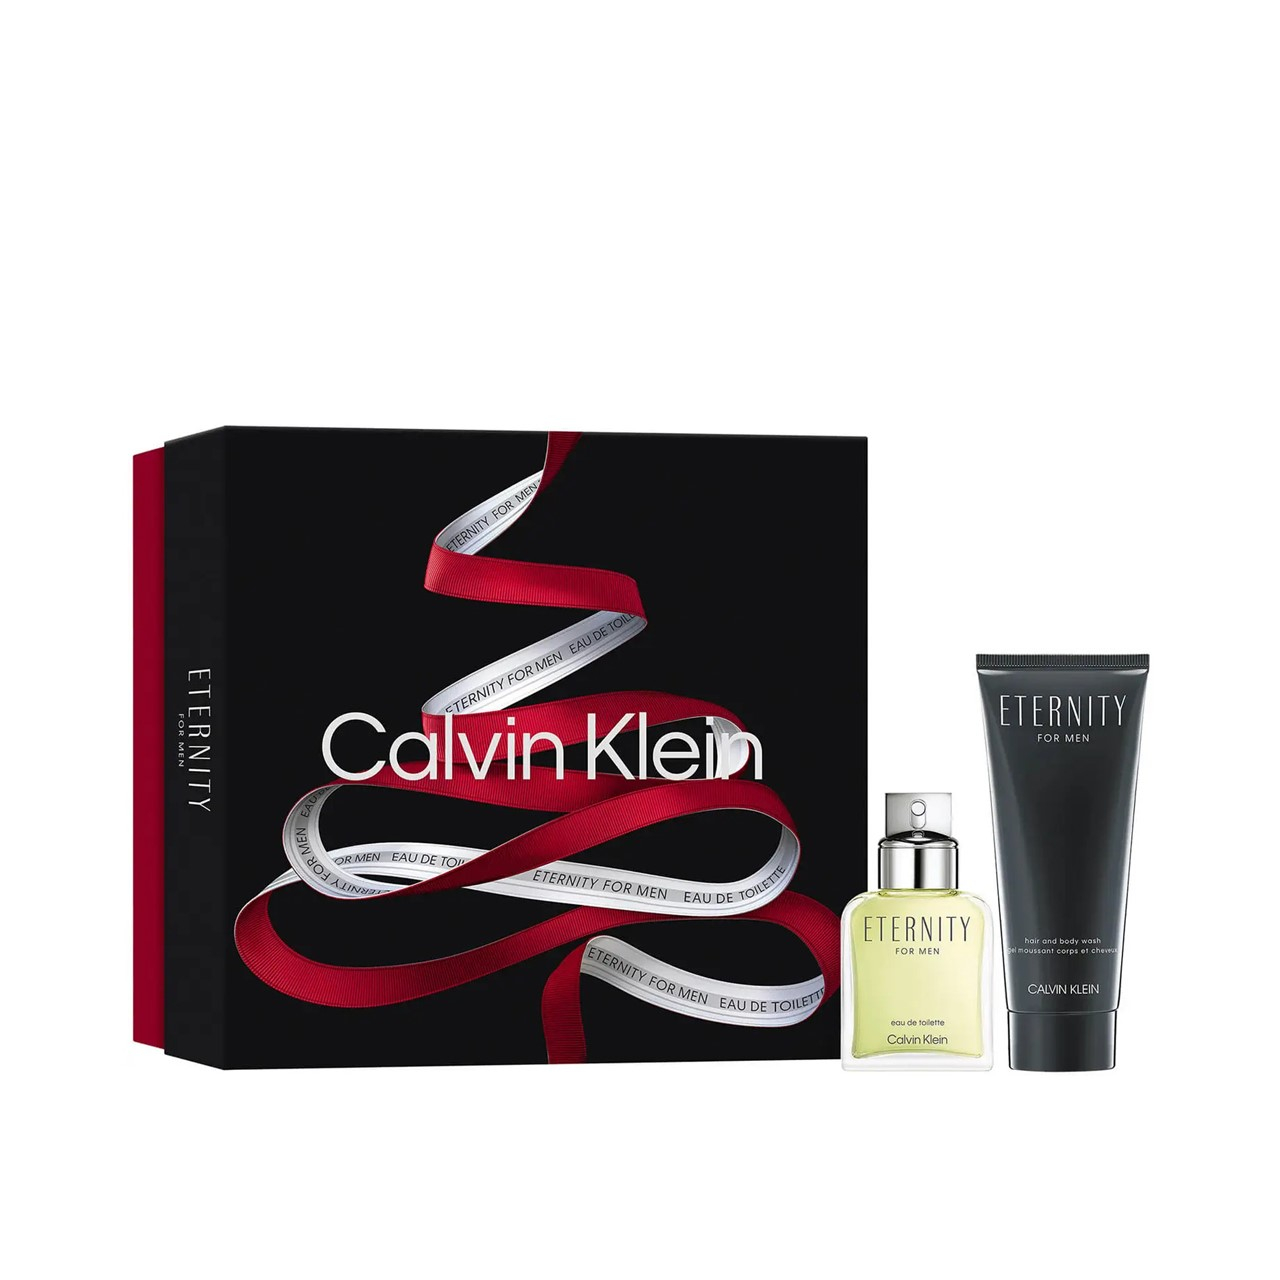 Calvin Klein Eternity For Men Eau de Toilette 50ml Coffret (1.7fl oz)